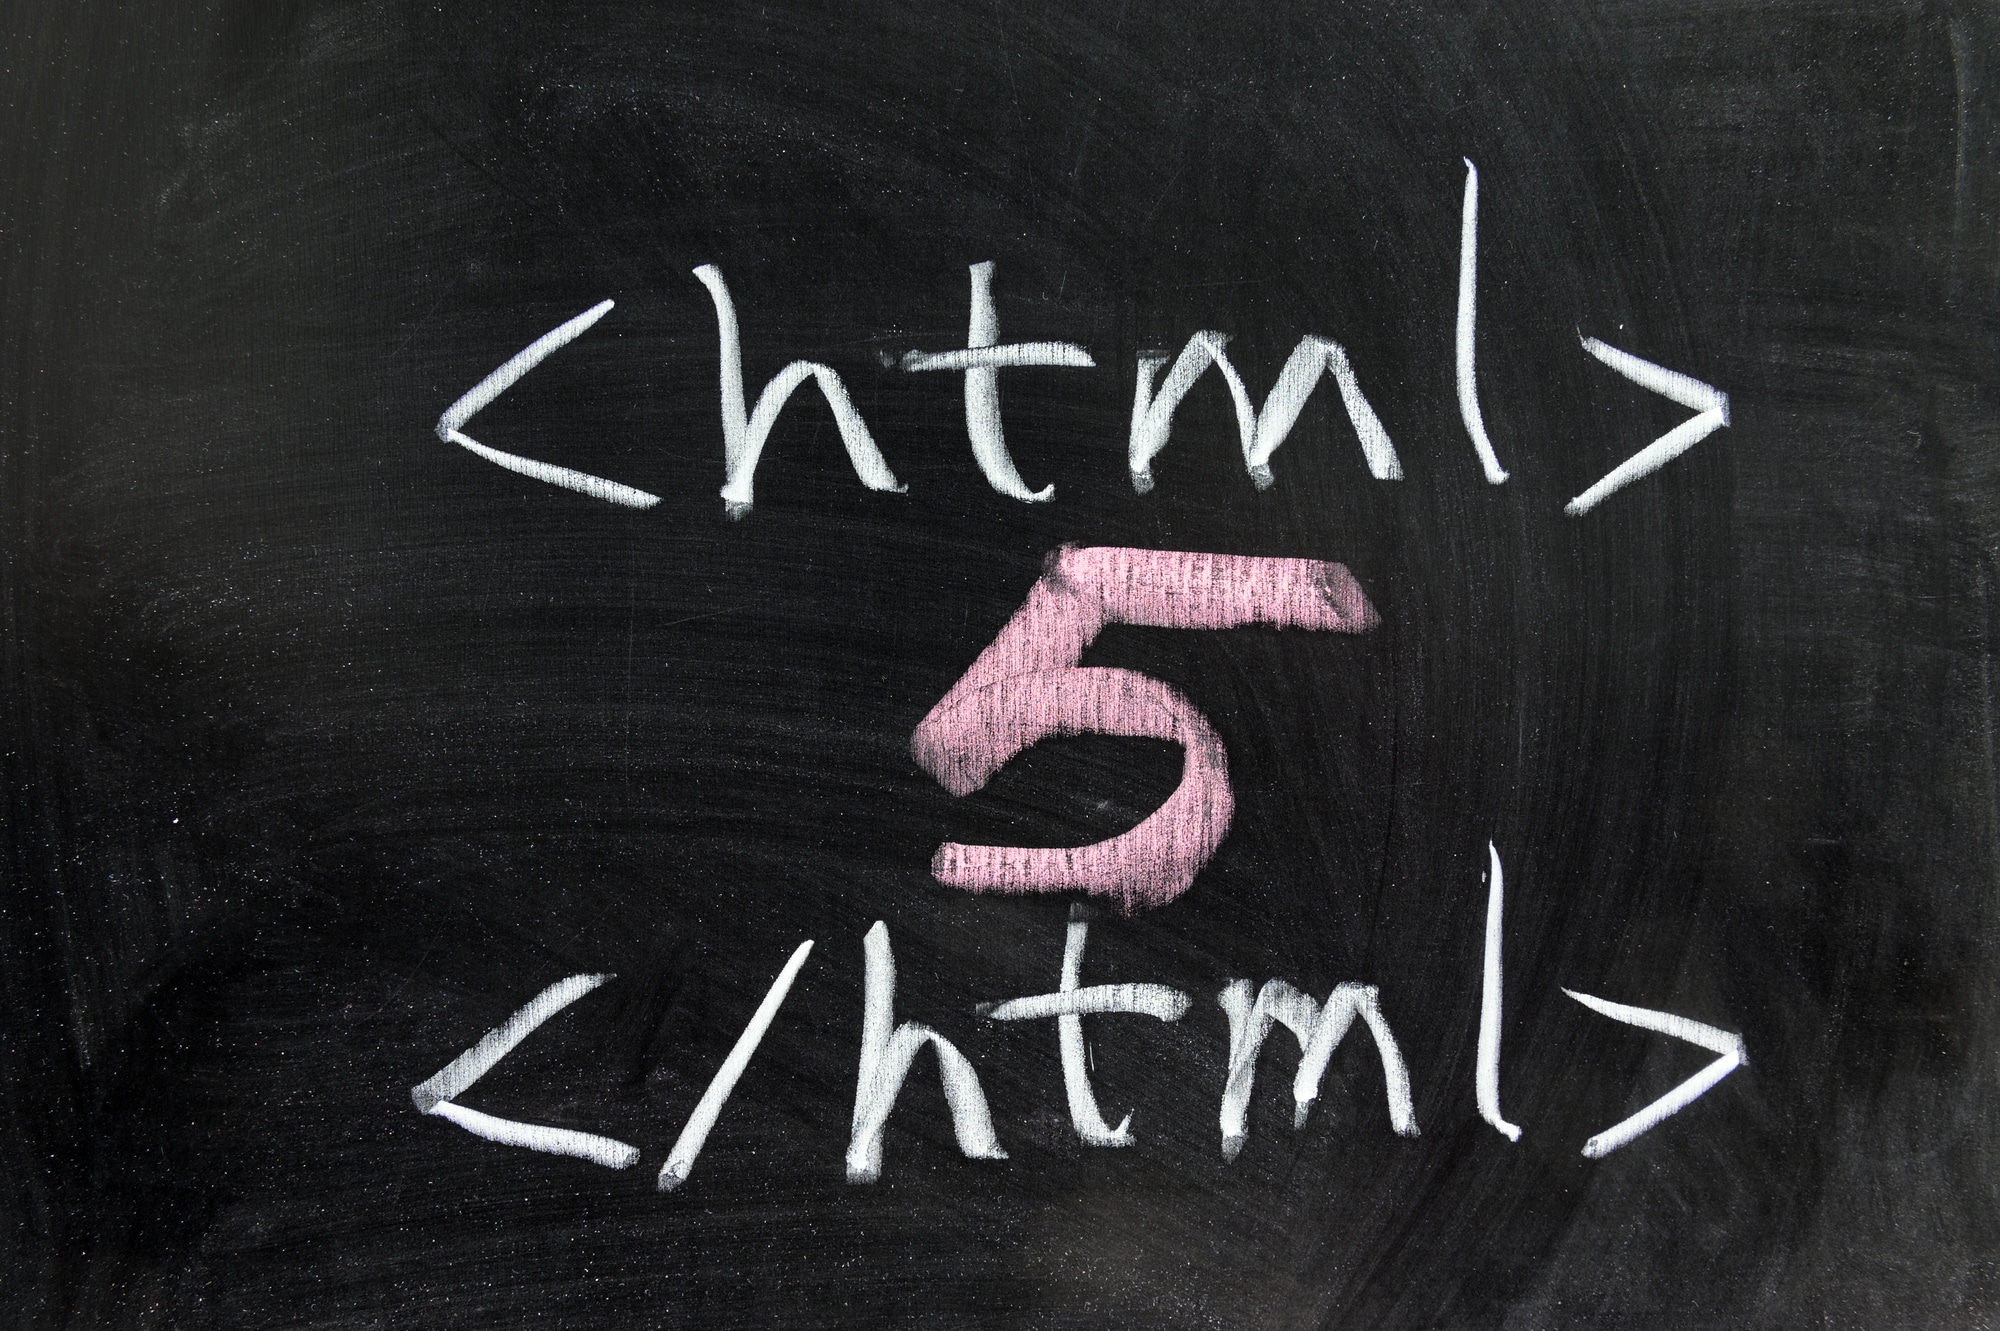 Полная форма HTML: основа веб-разработки